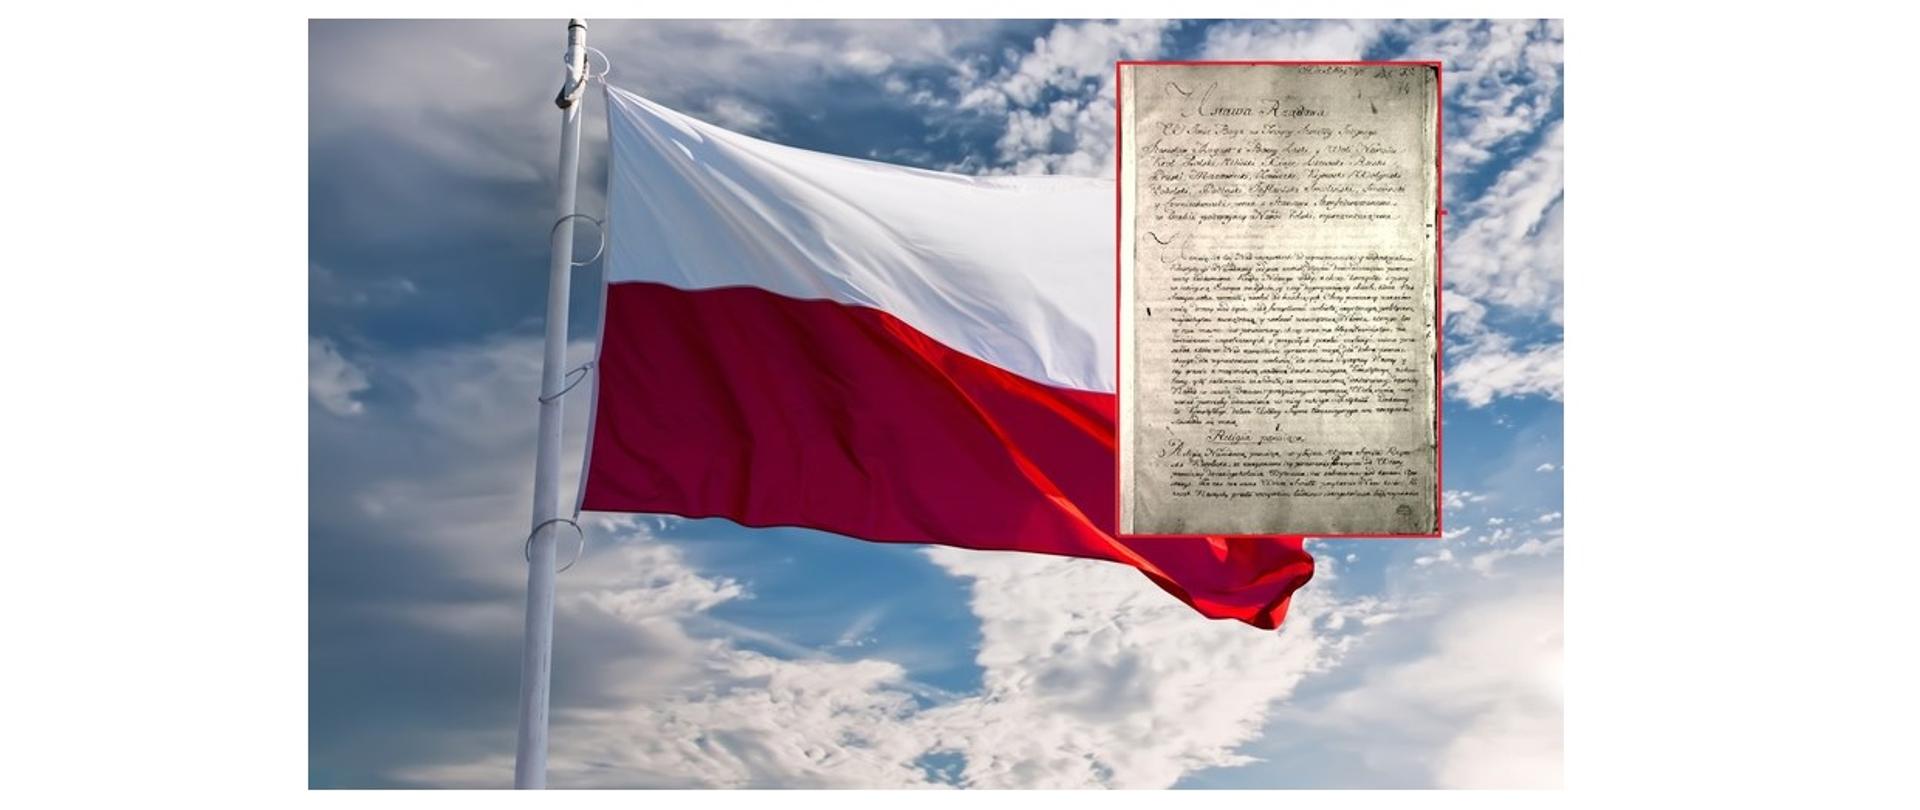 Na zdjęciu flaga polski wraz z zarysem dokumentu Konstytucja 3 Maja